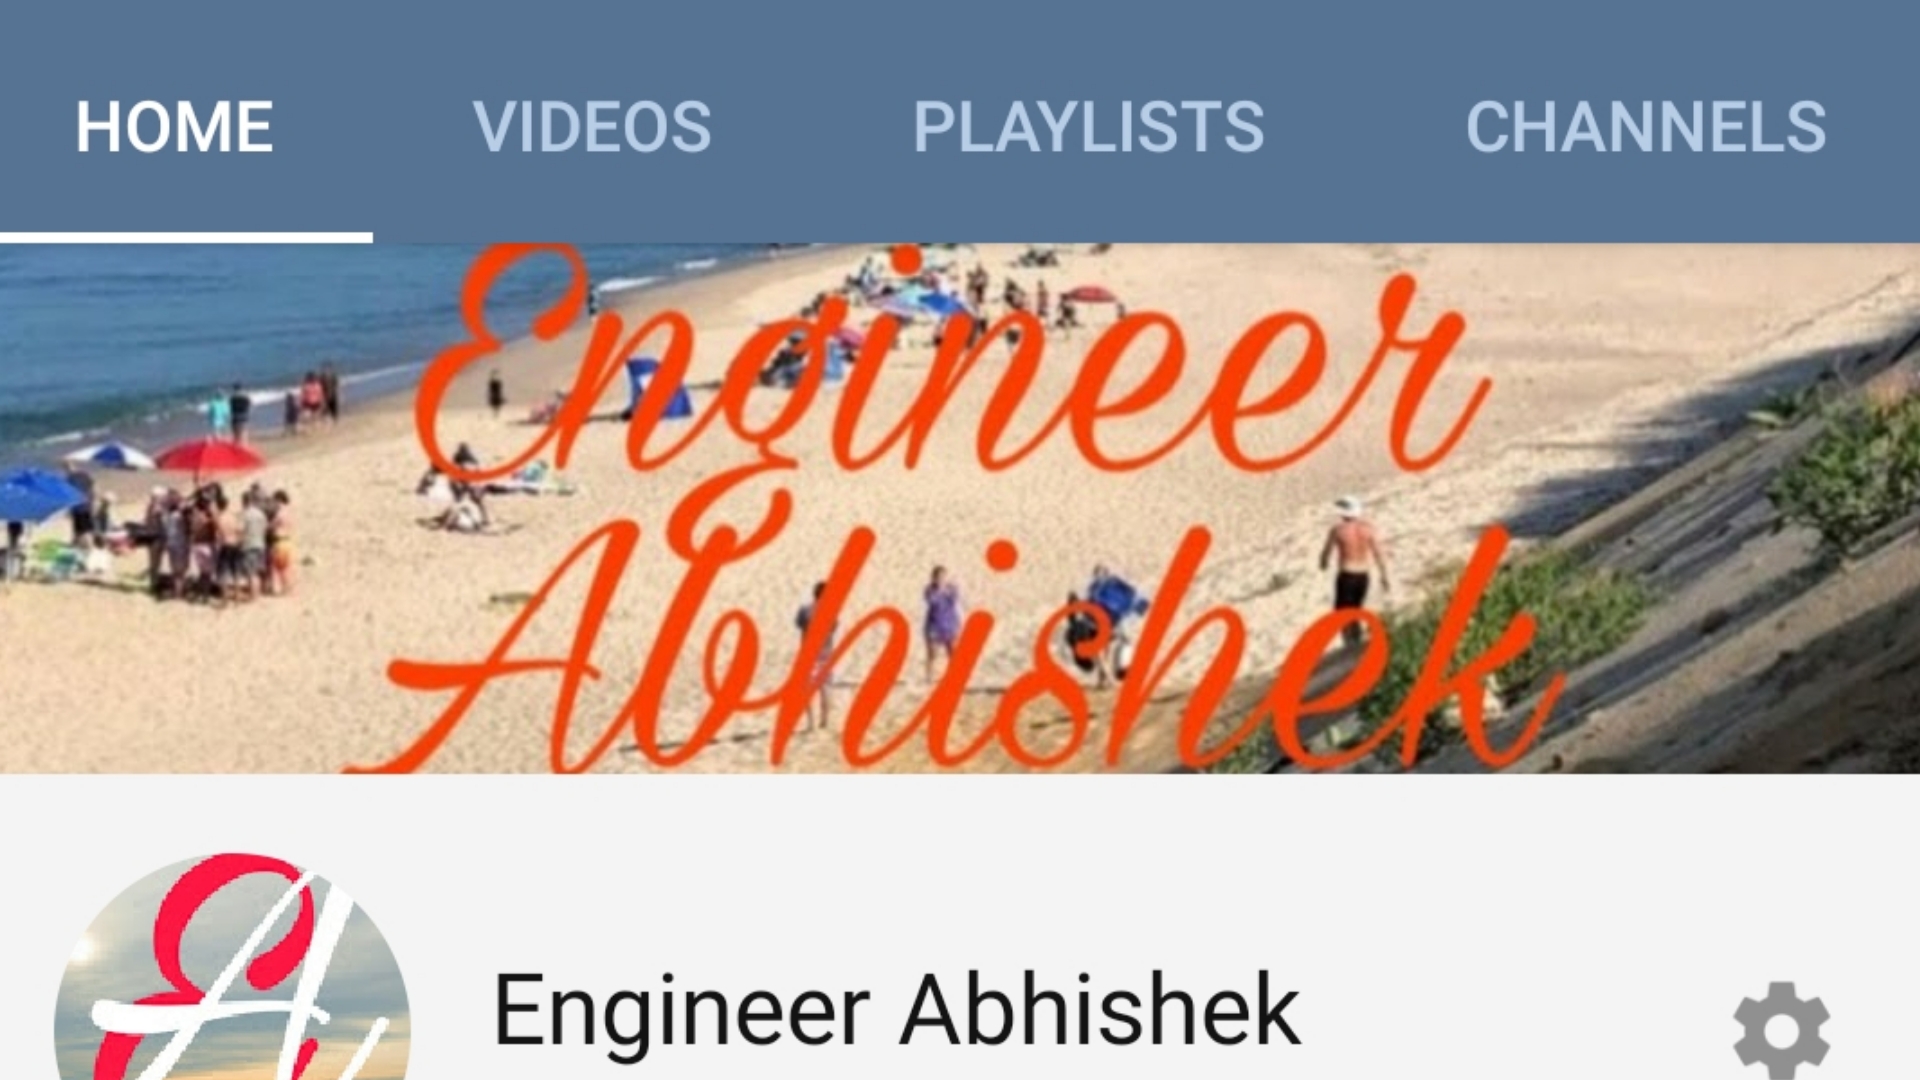 Engineer Abhishek